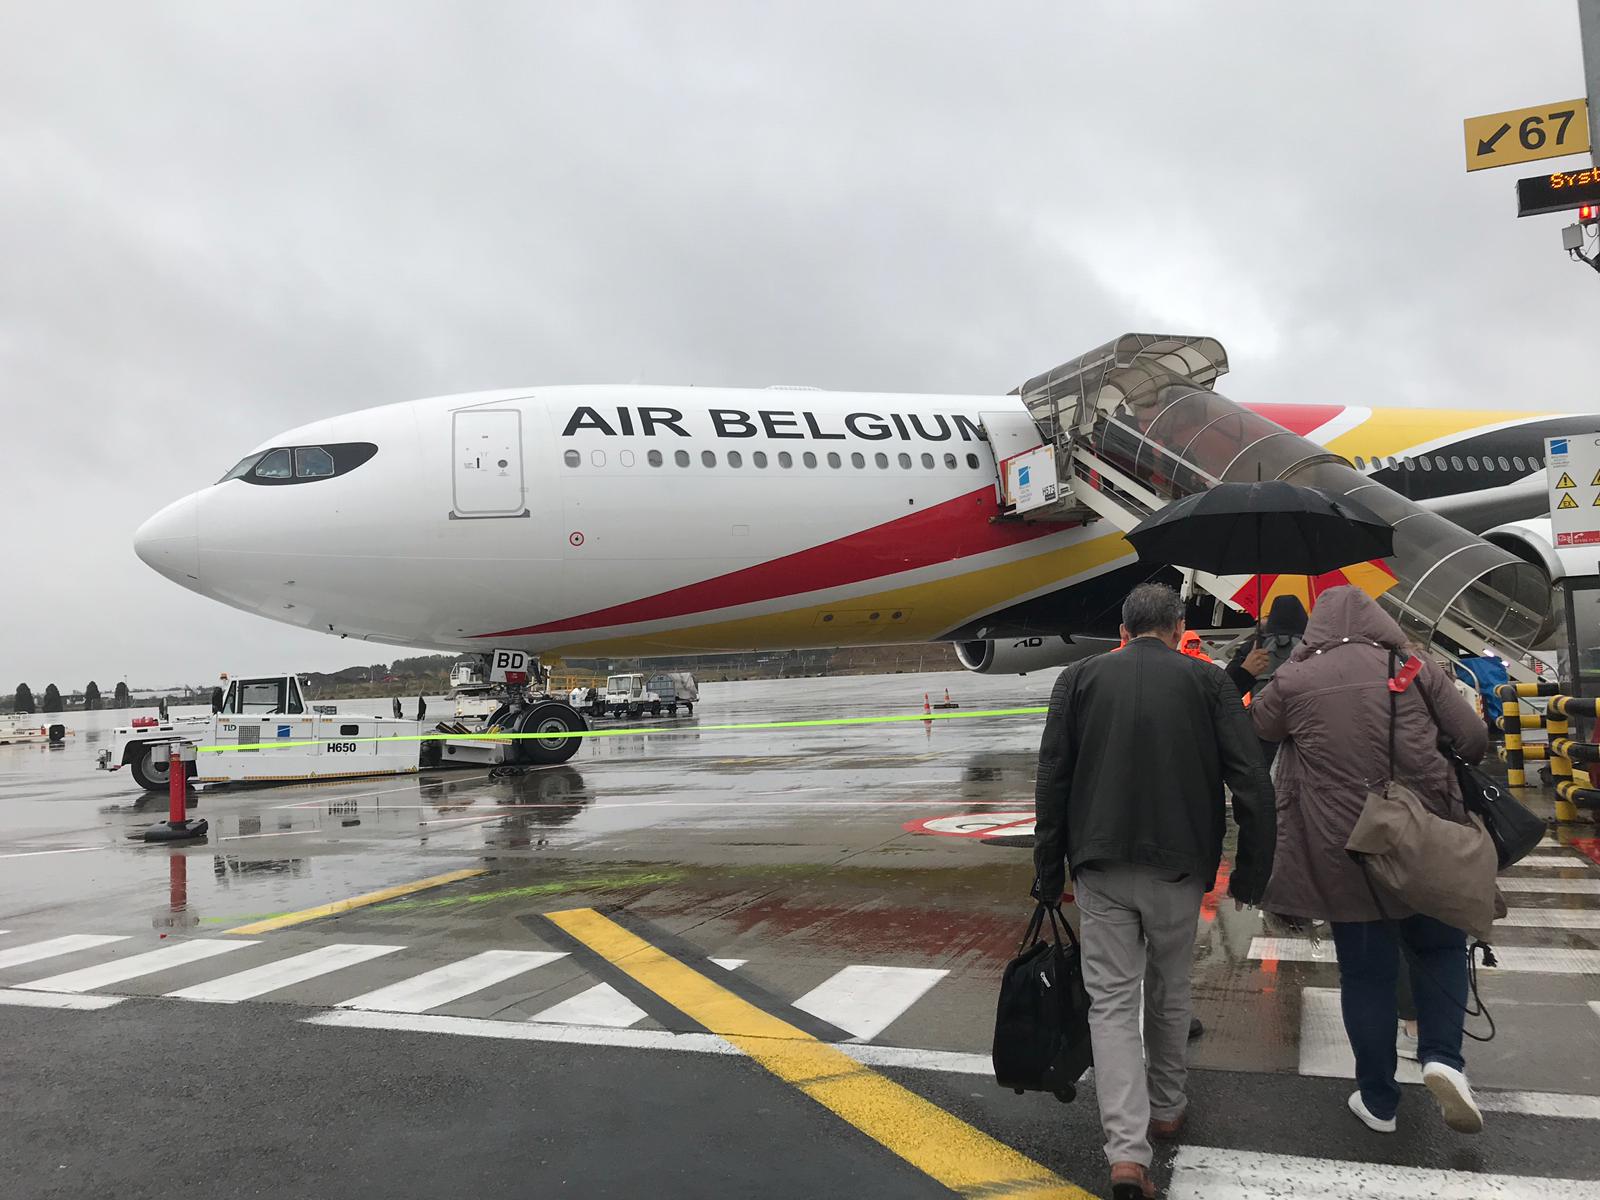 Air Belgium a lancé des vols vers les Antilles en décembre 2019 © PG TM